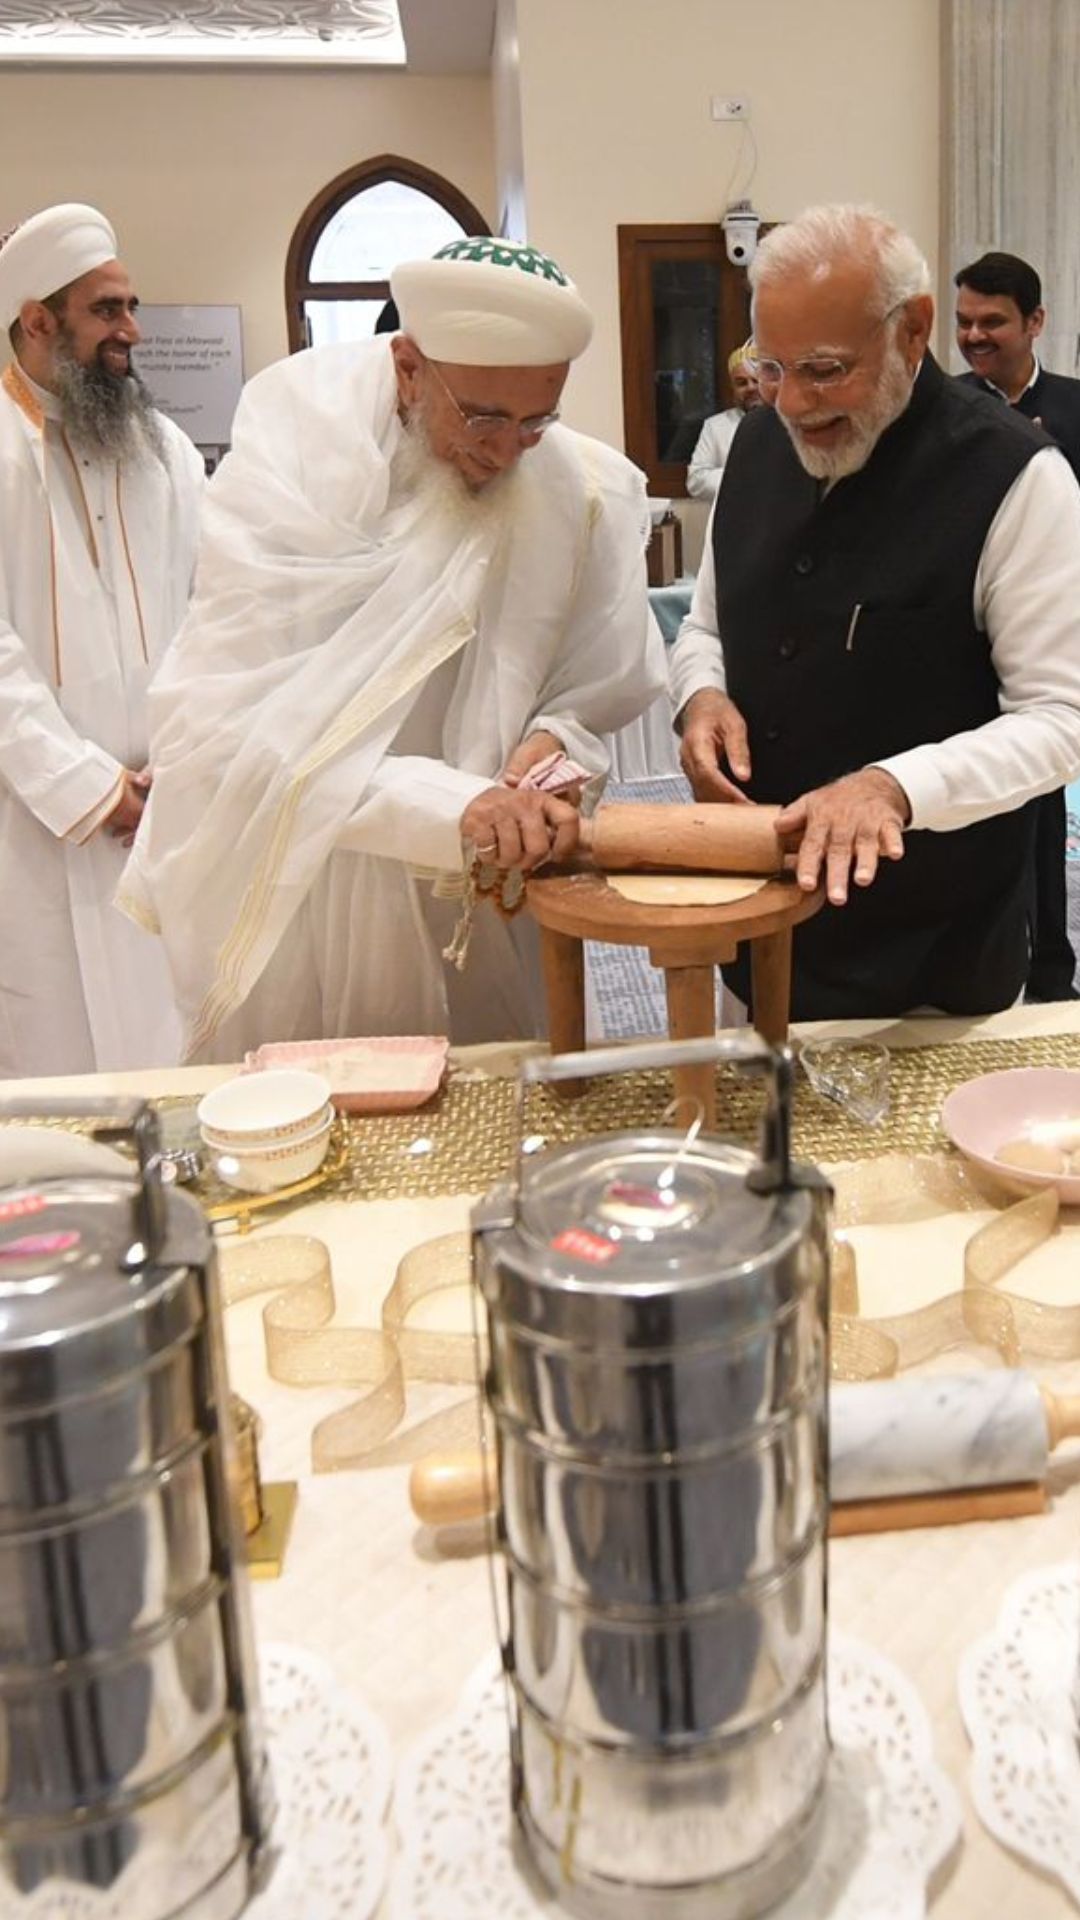 प्रधानमंत्री नरेन्द्र मोदी ने शुक्रवार को दाऊदी बोहरा समुदाय के साथ साझा किए गए अपने दशकों पुराने रिश्तों को याद किया। 